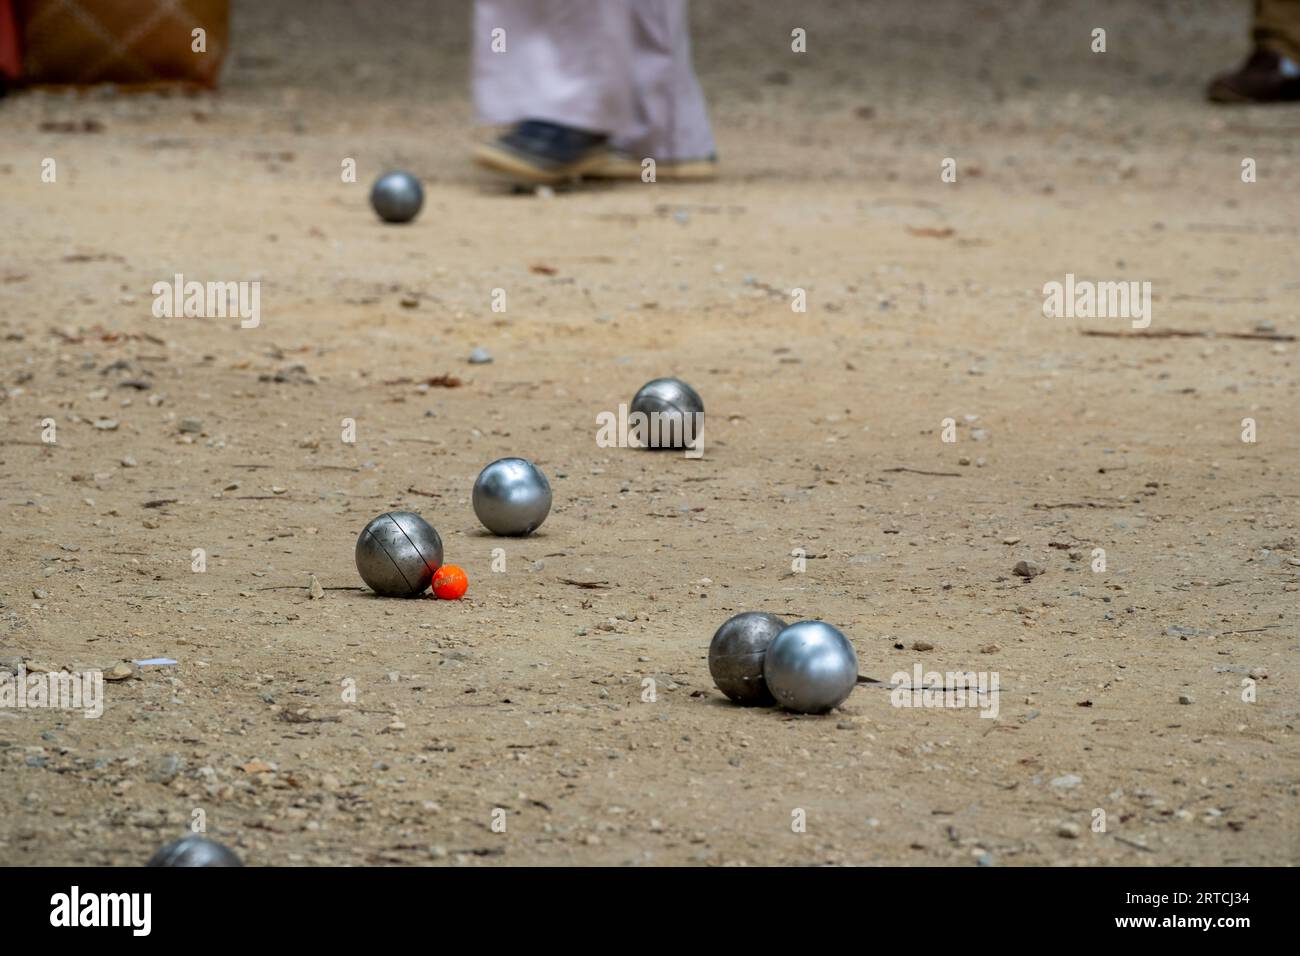 Petanque Ball Boules Schüsseln auf einem Staubboden, Foto beim Aufprall. Petanque-Spiel auf dem Boden. Kugeln und einen kleinen Holzheber. Stockfoto